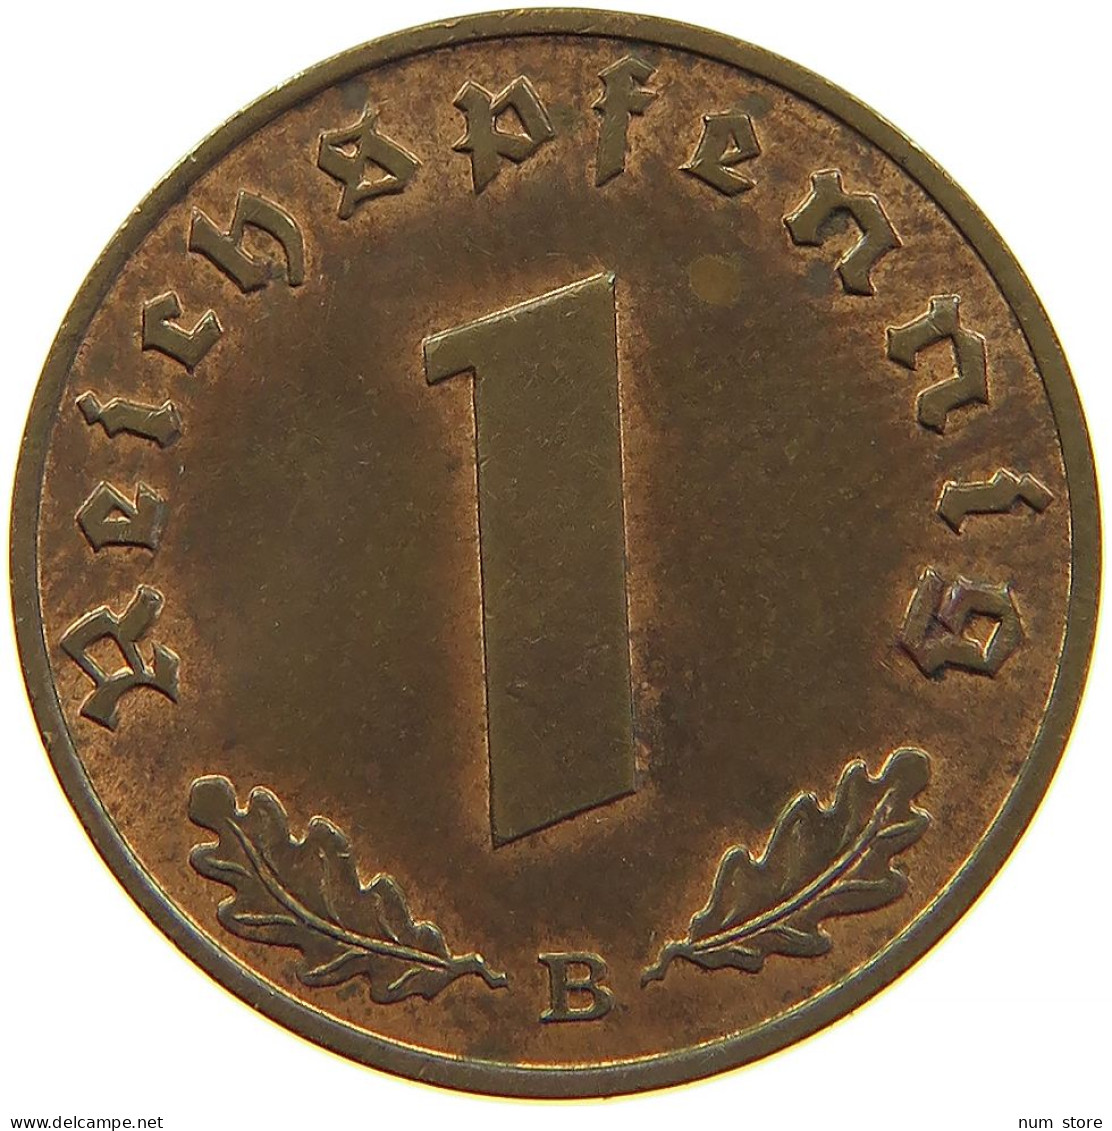 GERMANY 1 REICHSPFENNIG 1939 B #s083 0725 - 1 Reichspfennig